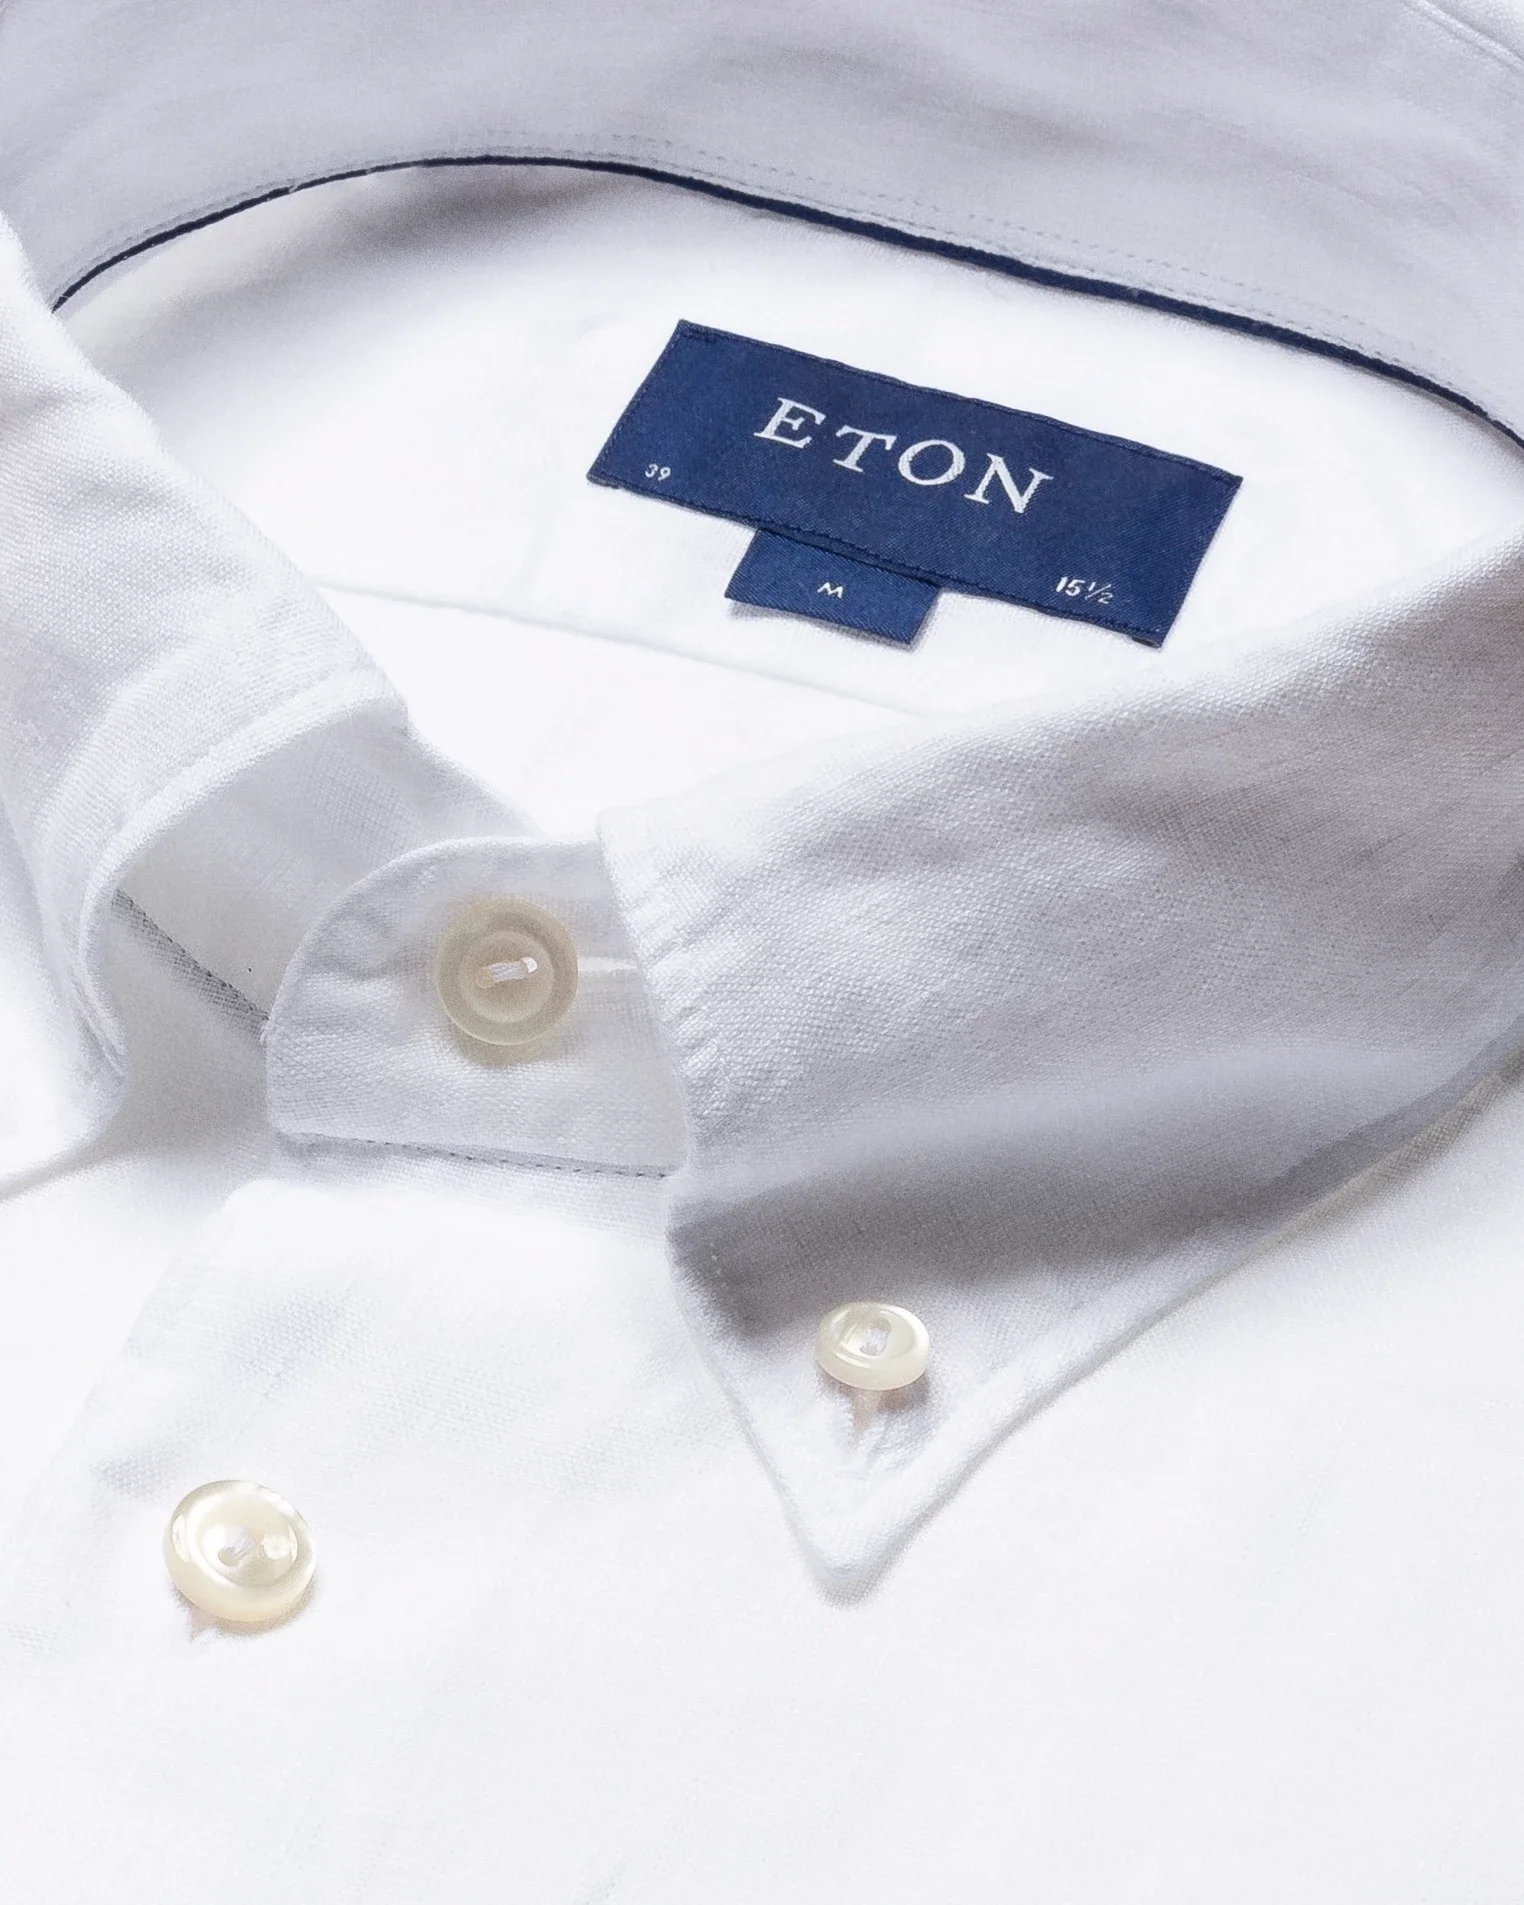 Eton - white linen shirt short sleeve